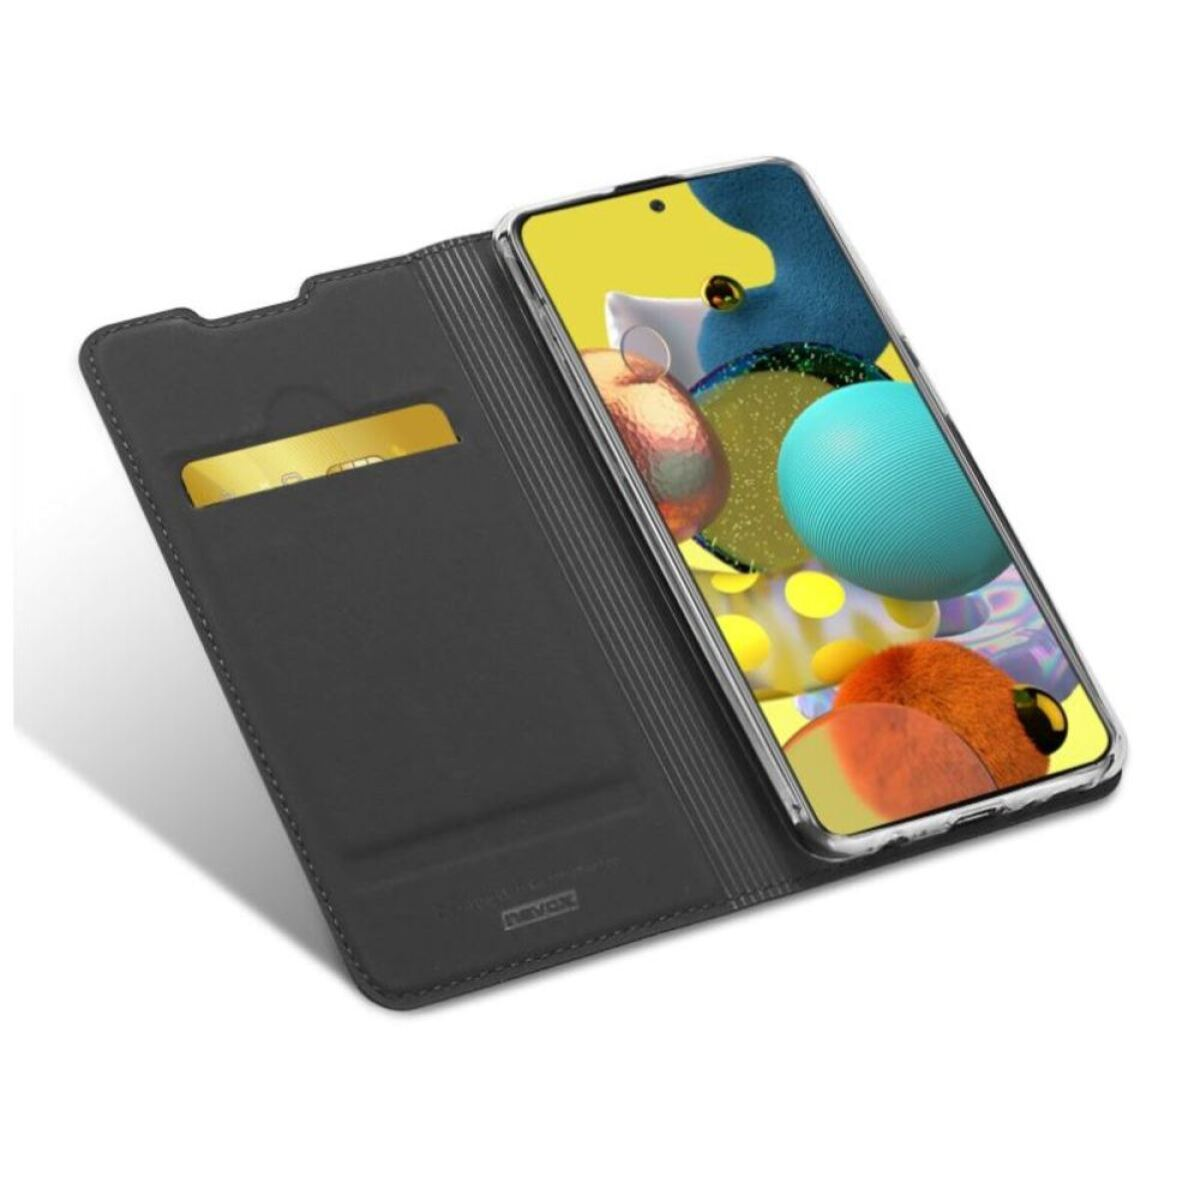 A42 A42 NEVOX Samsung, Vario Galaxy basaltgrau, Series 5G Galaxy Booktasche Bookcover, Grau 5G,